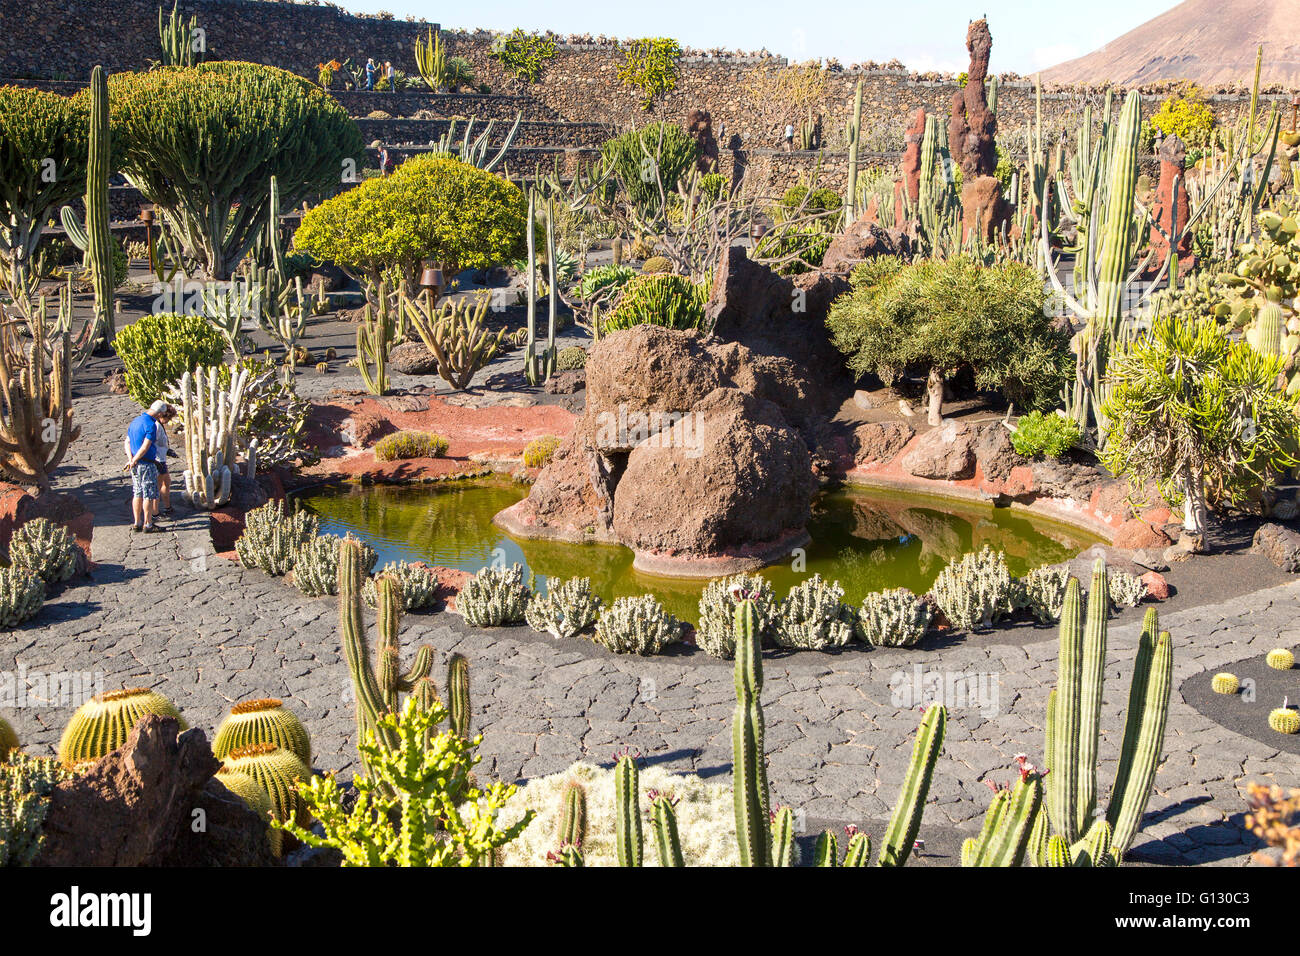 Dentro de las plantas de cactus jardín de cactus diseñado por César Manrique, Guatiza. Lanzarote, Islas Canarias, España Foto de stock